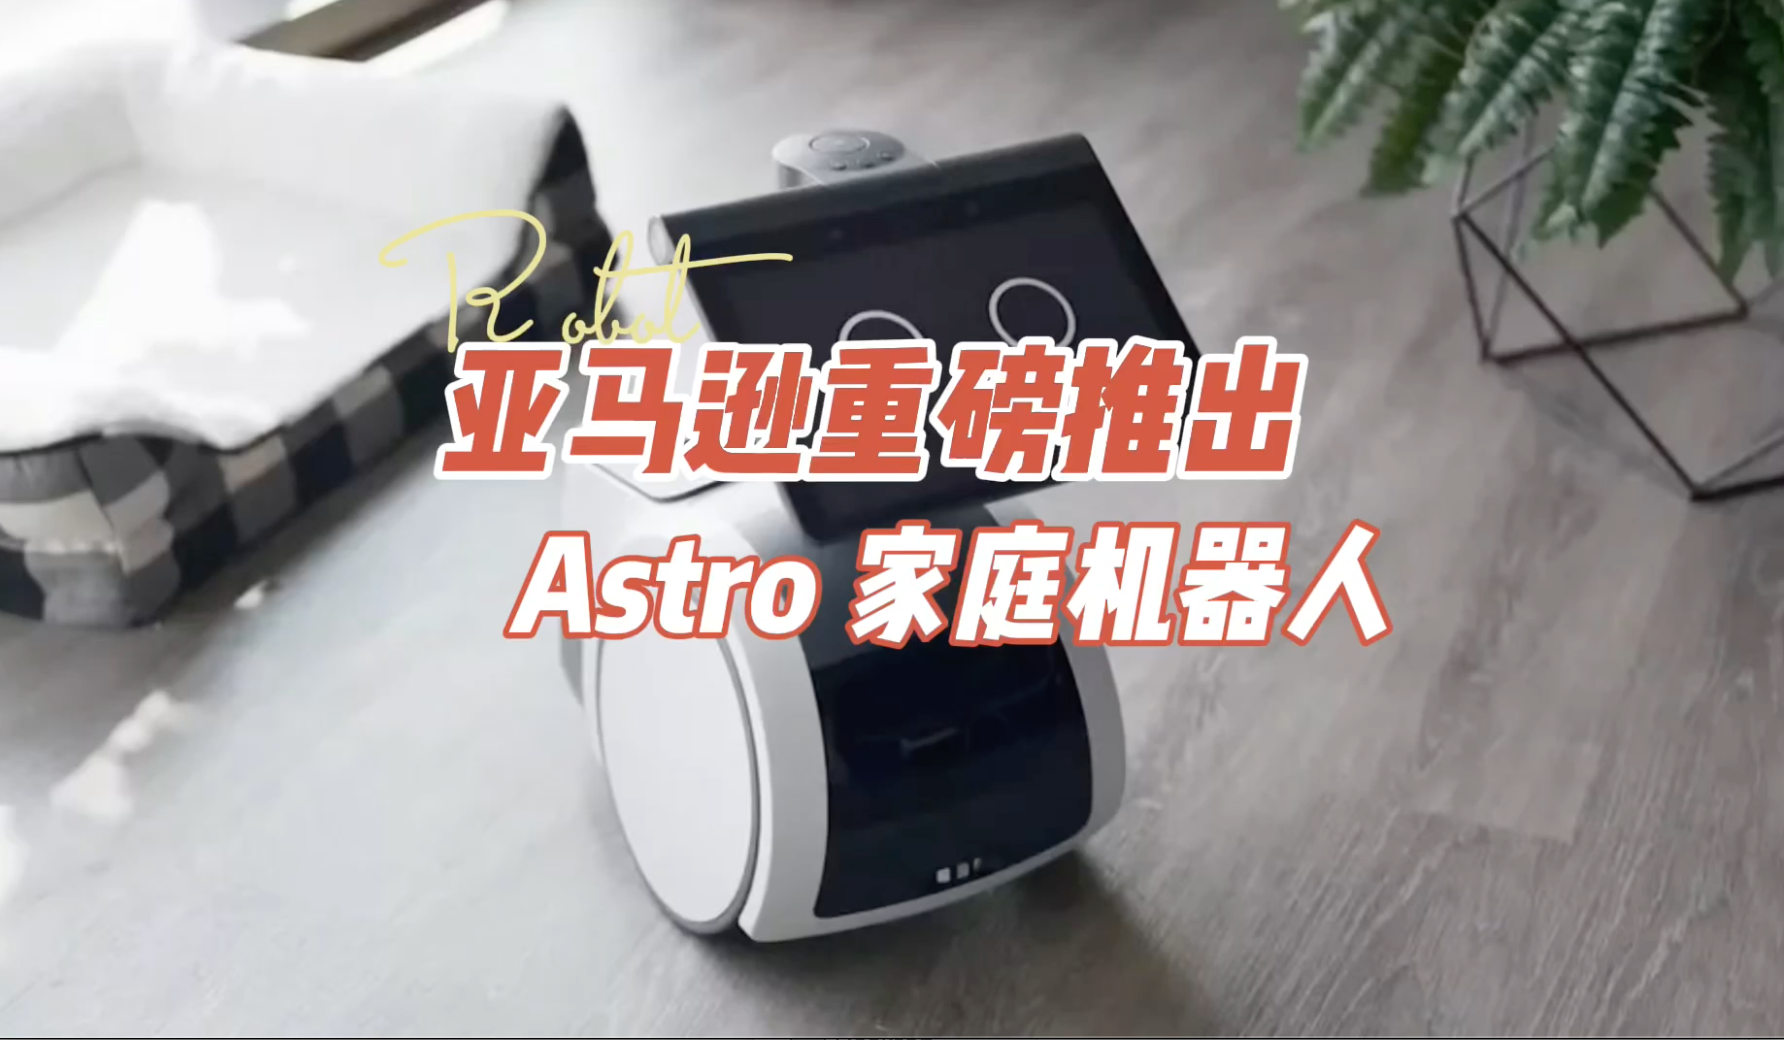 亚马逊重磅推出Astro家庭机器人